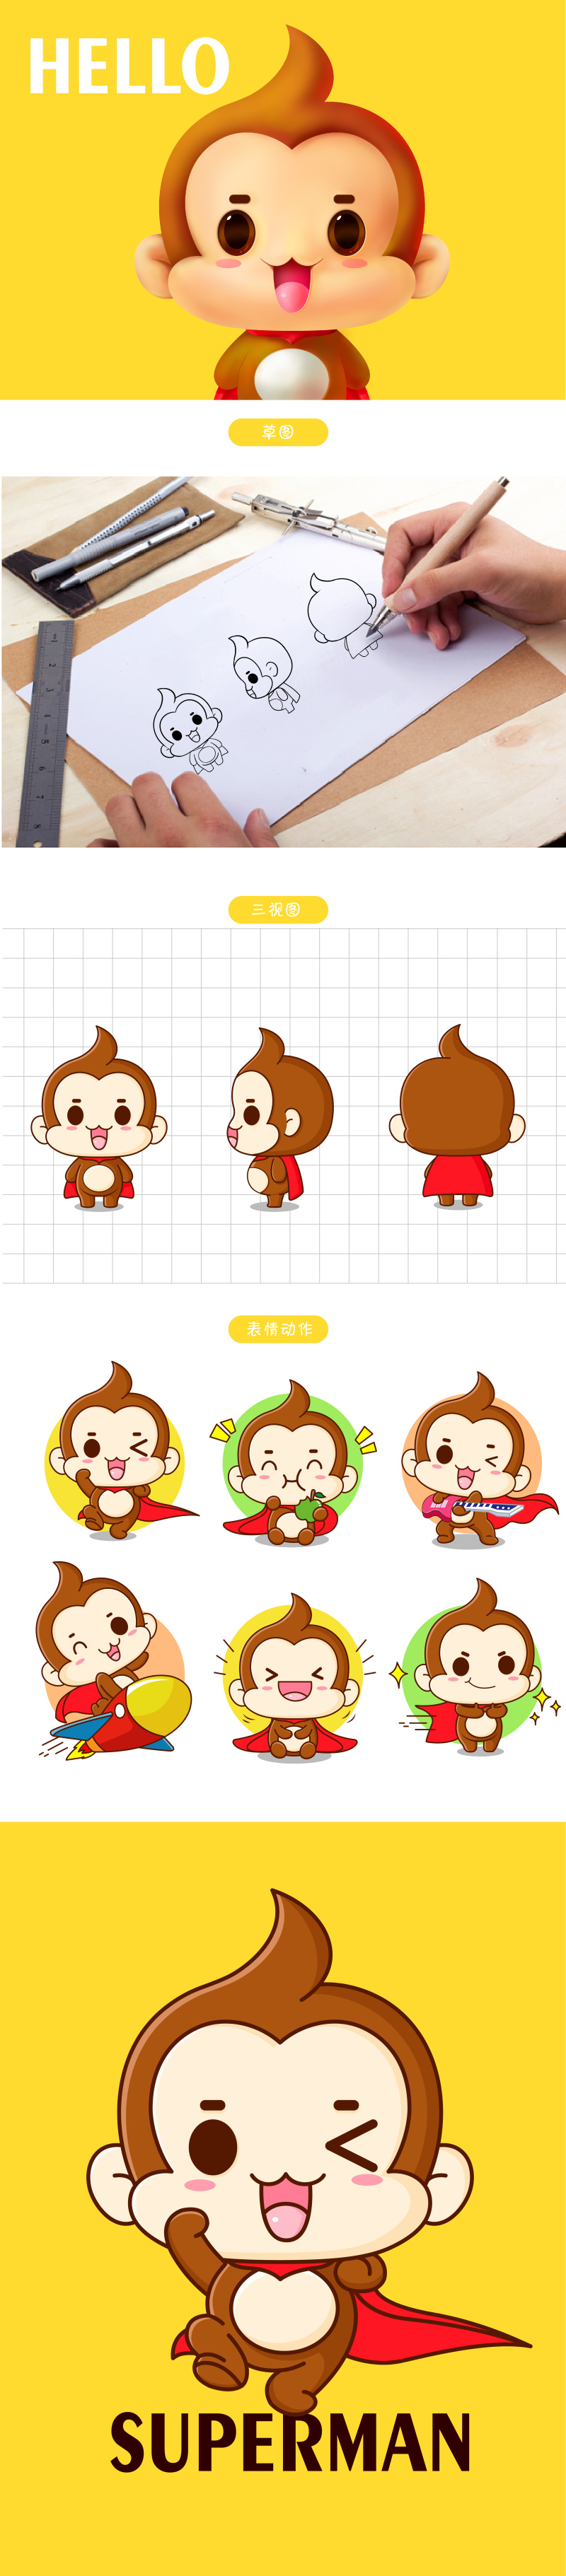 母婴产品Meekey猴子吉祥物卡通形象设计微信表情包gif